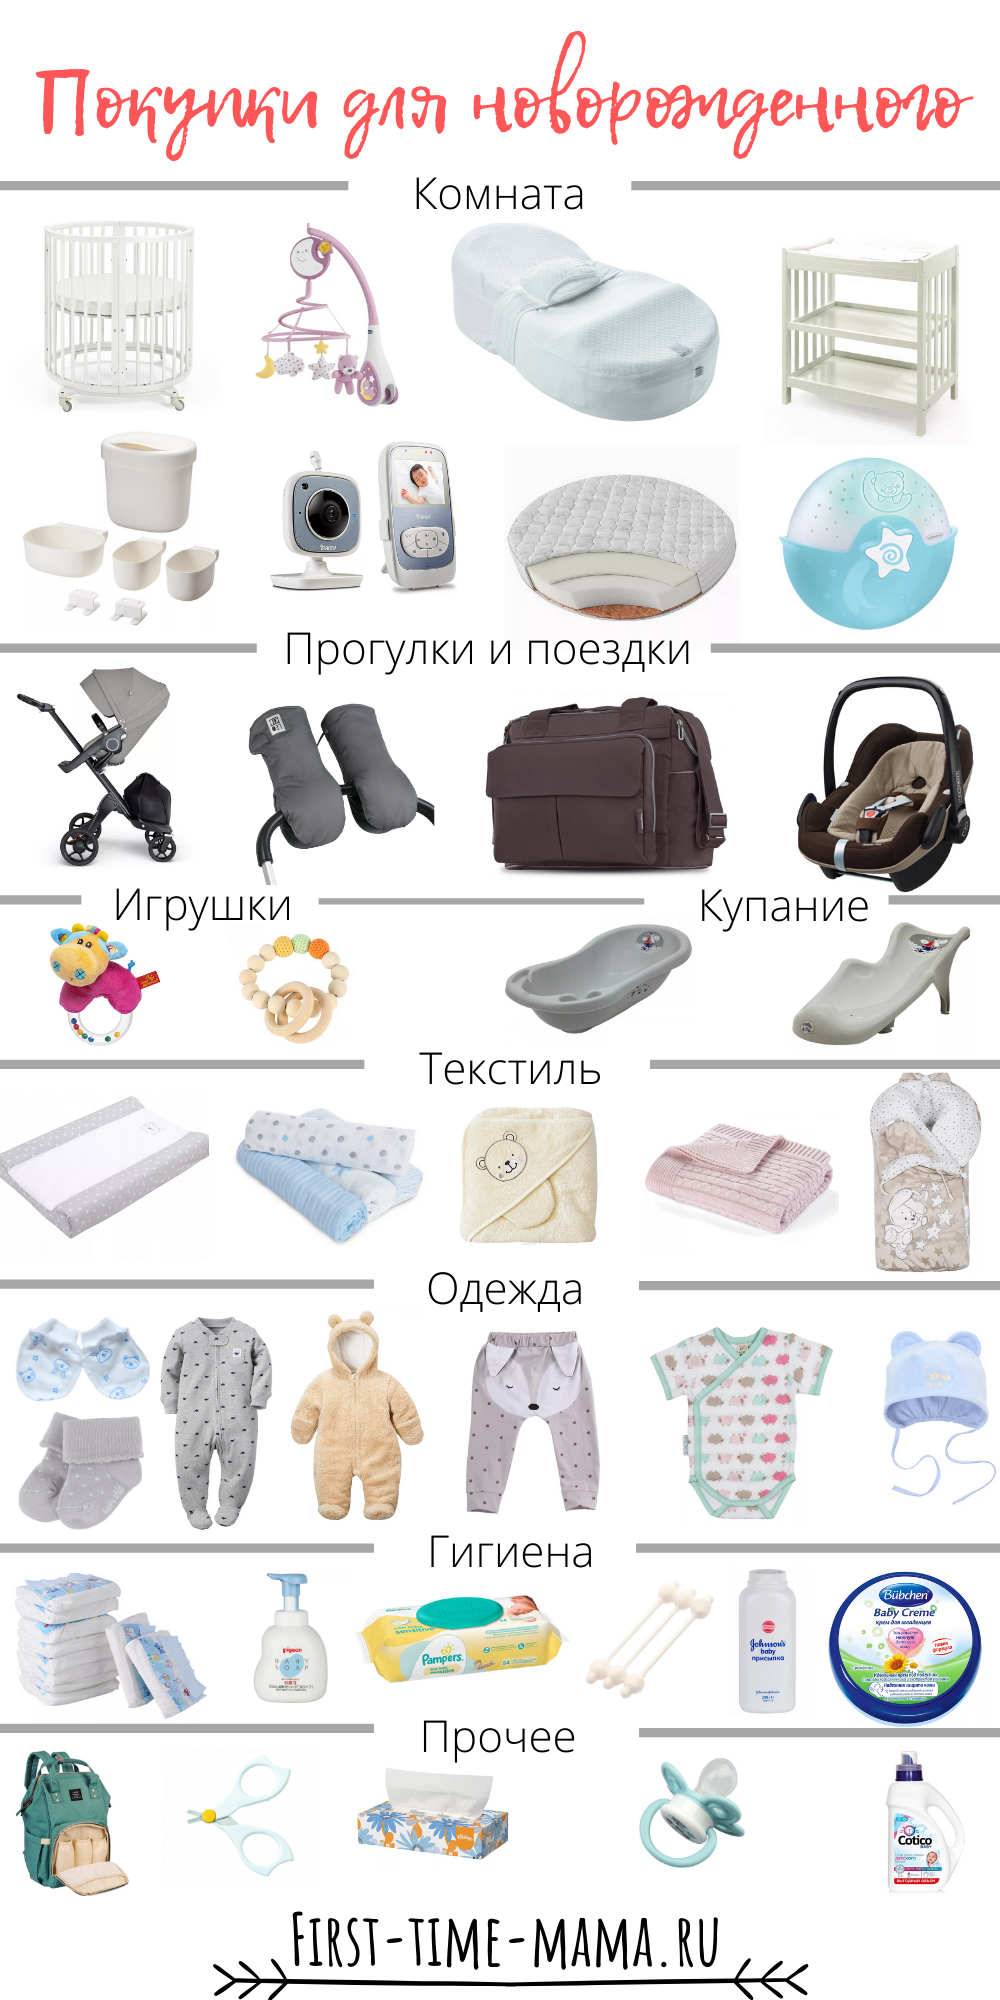 Что нужно малышу на первое. Вещи первой необходимости для новорожденного после роддома. Одежда для новорожденного список необходимого. Список вещей для новорожденного. Список однждыдля новорожденного.